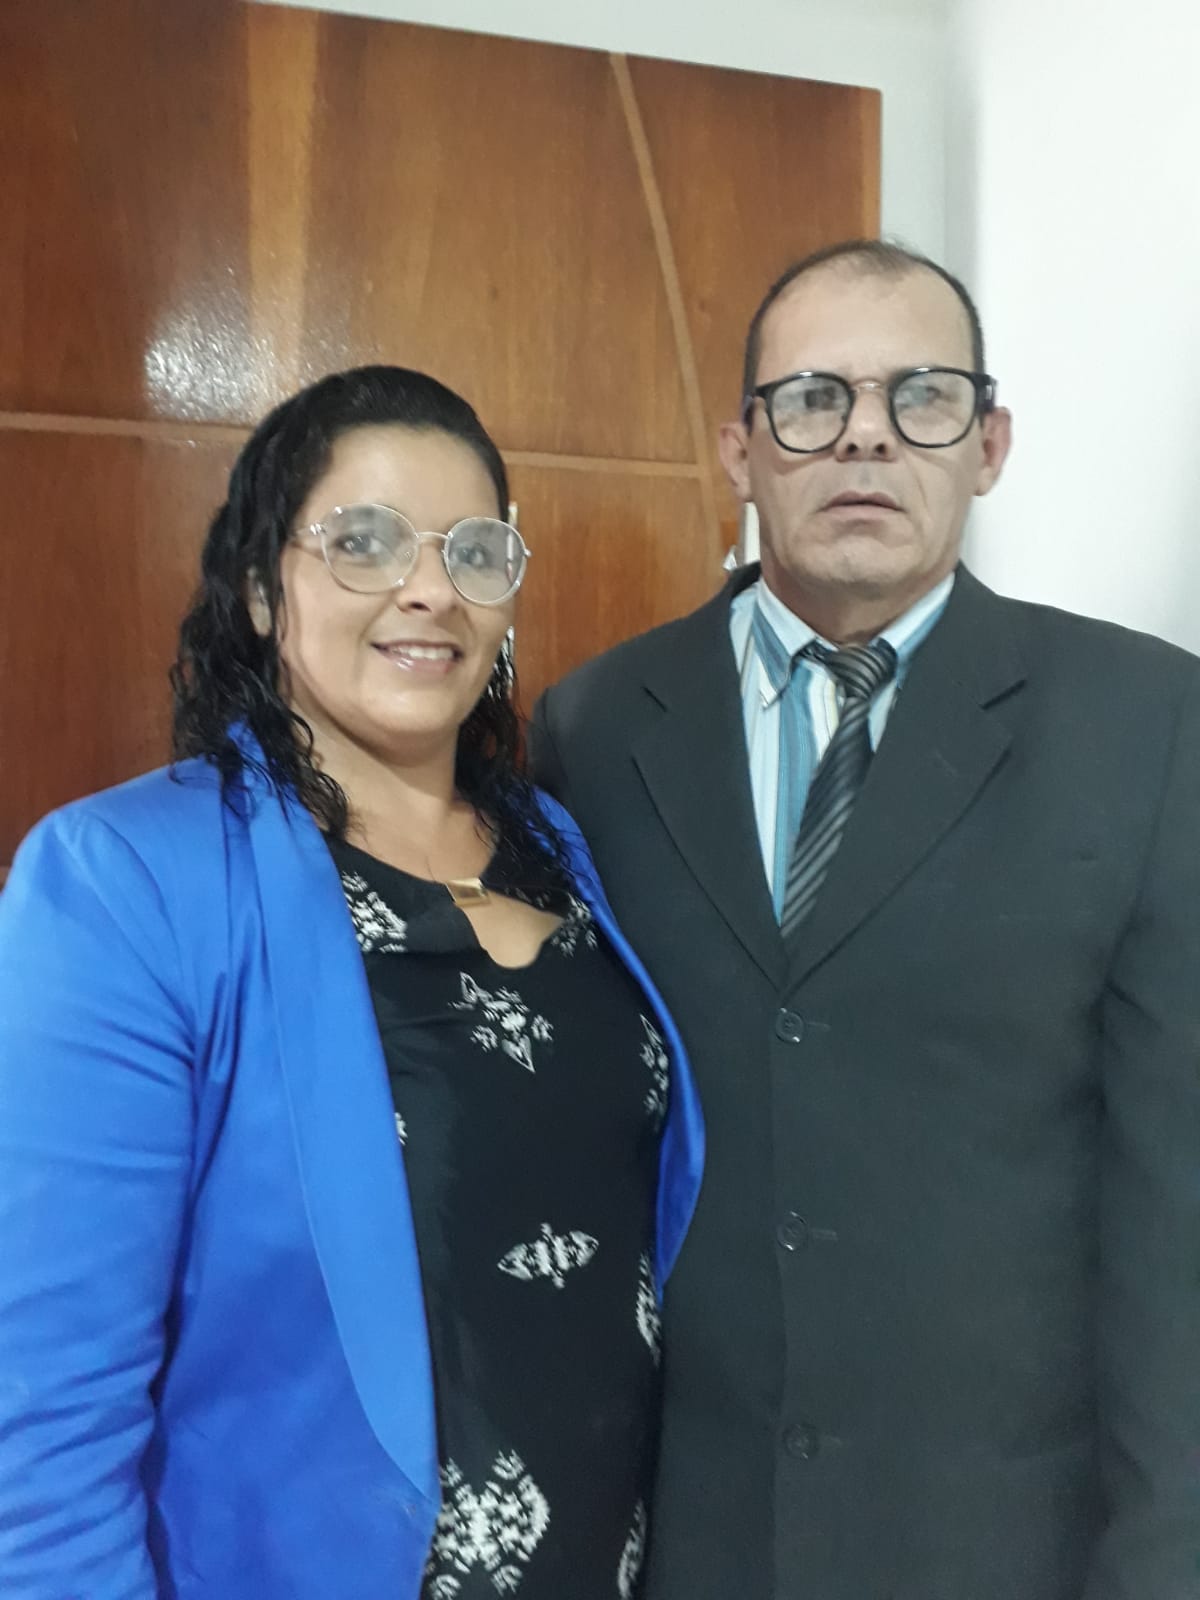 Bispo Pastor Rinaldo de Souza limeira e Esposa Mericia Fernandes da Silva